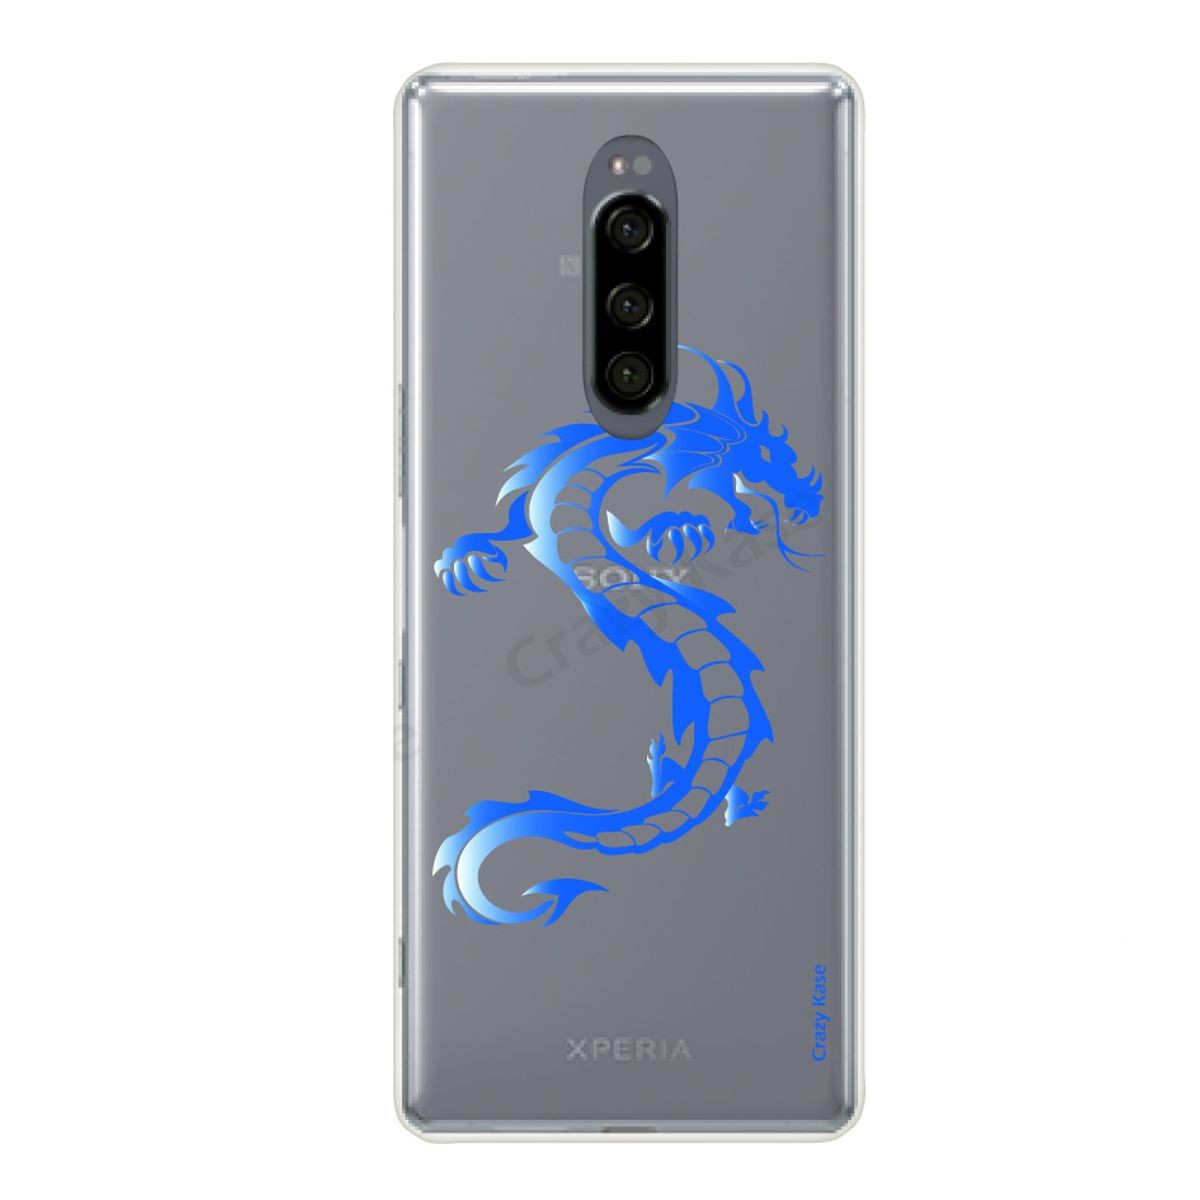 Coque compatible Xperia 1 souple Dragon bleu - Crazy Kase